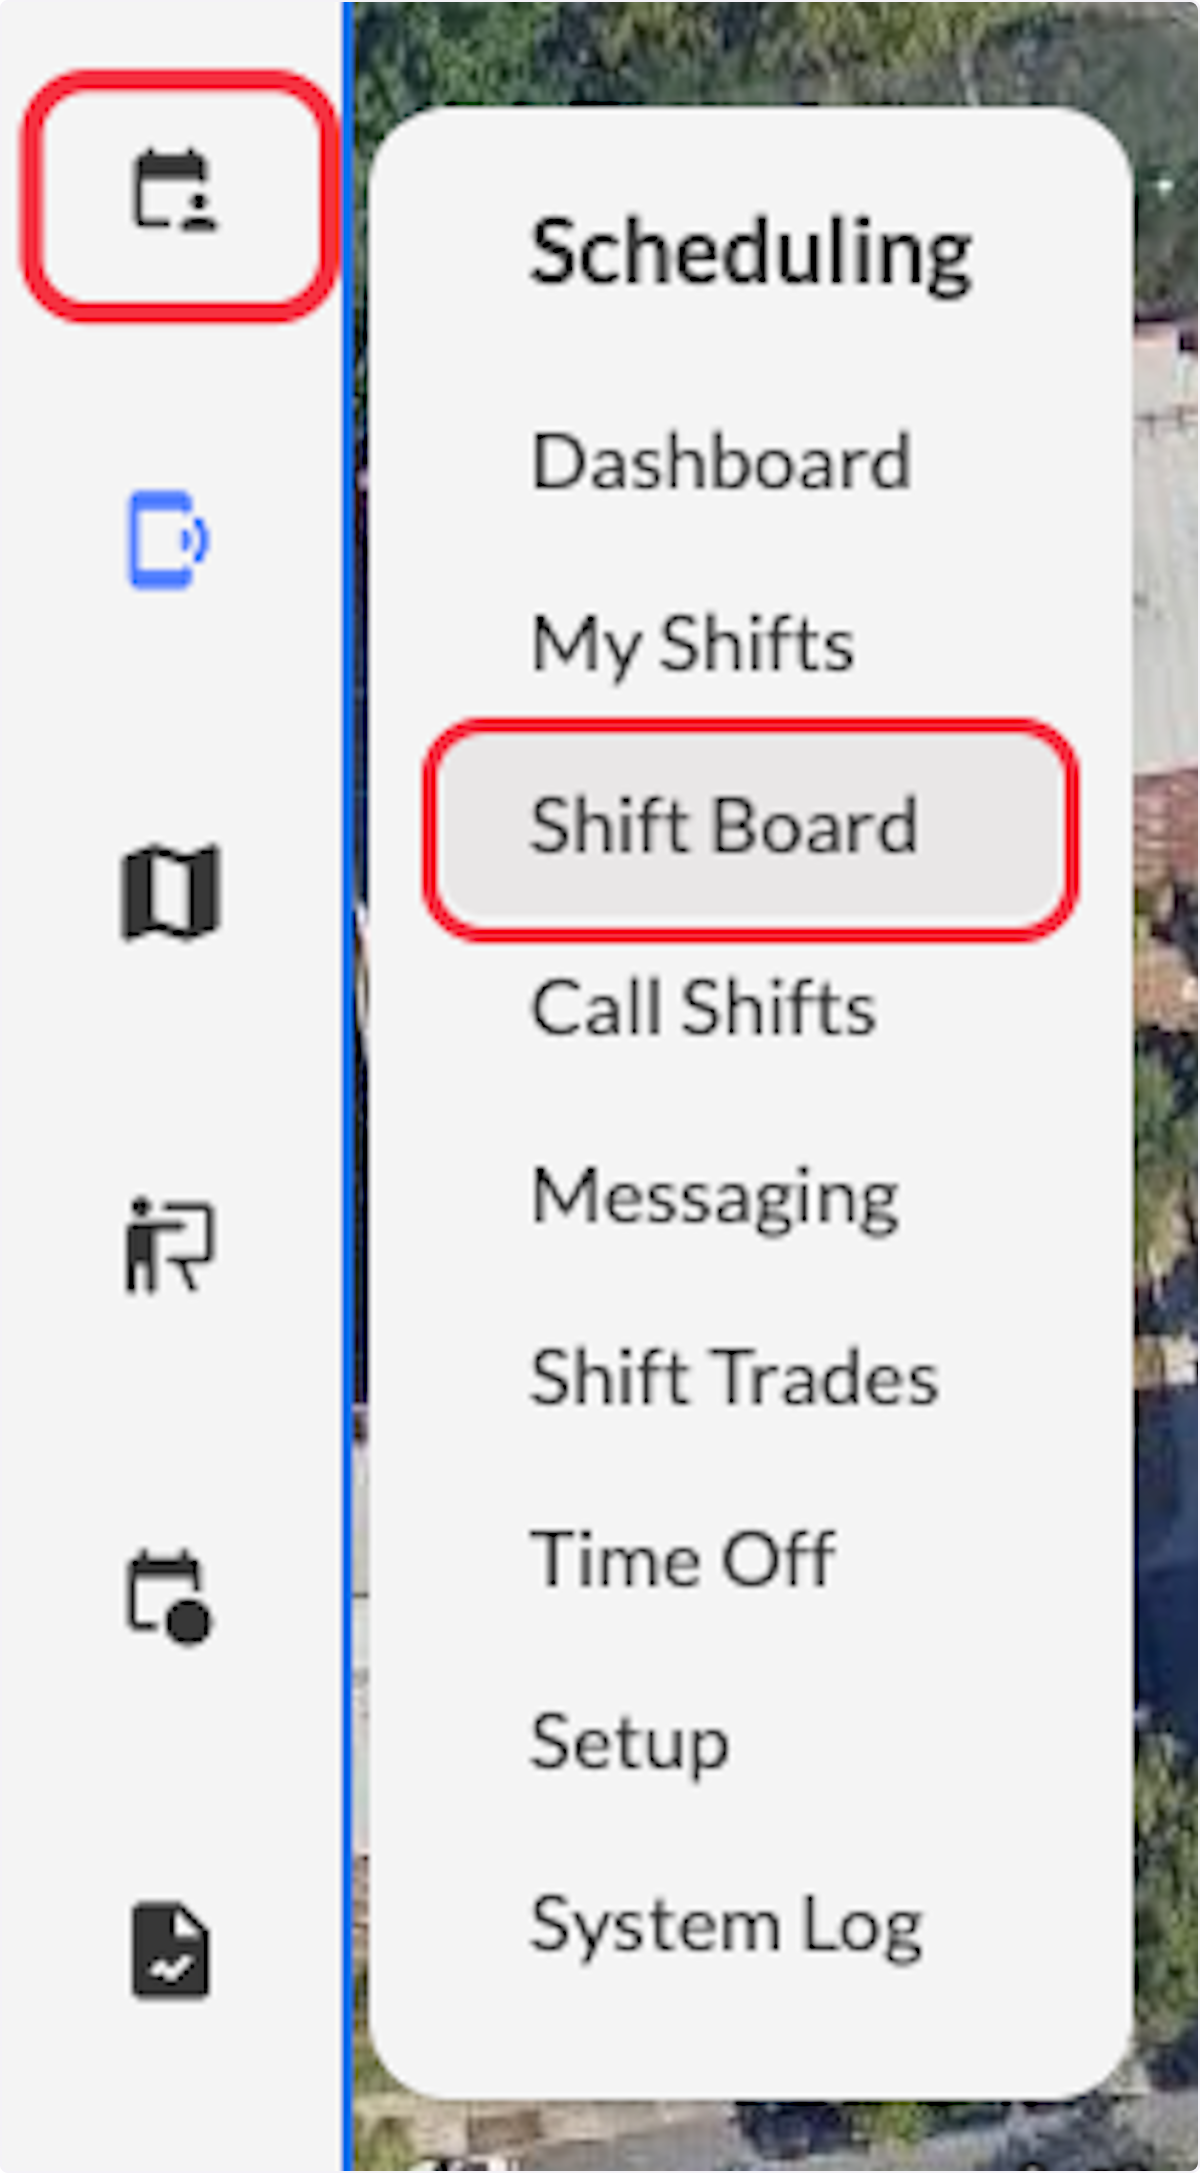 Click on Shift Board